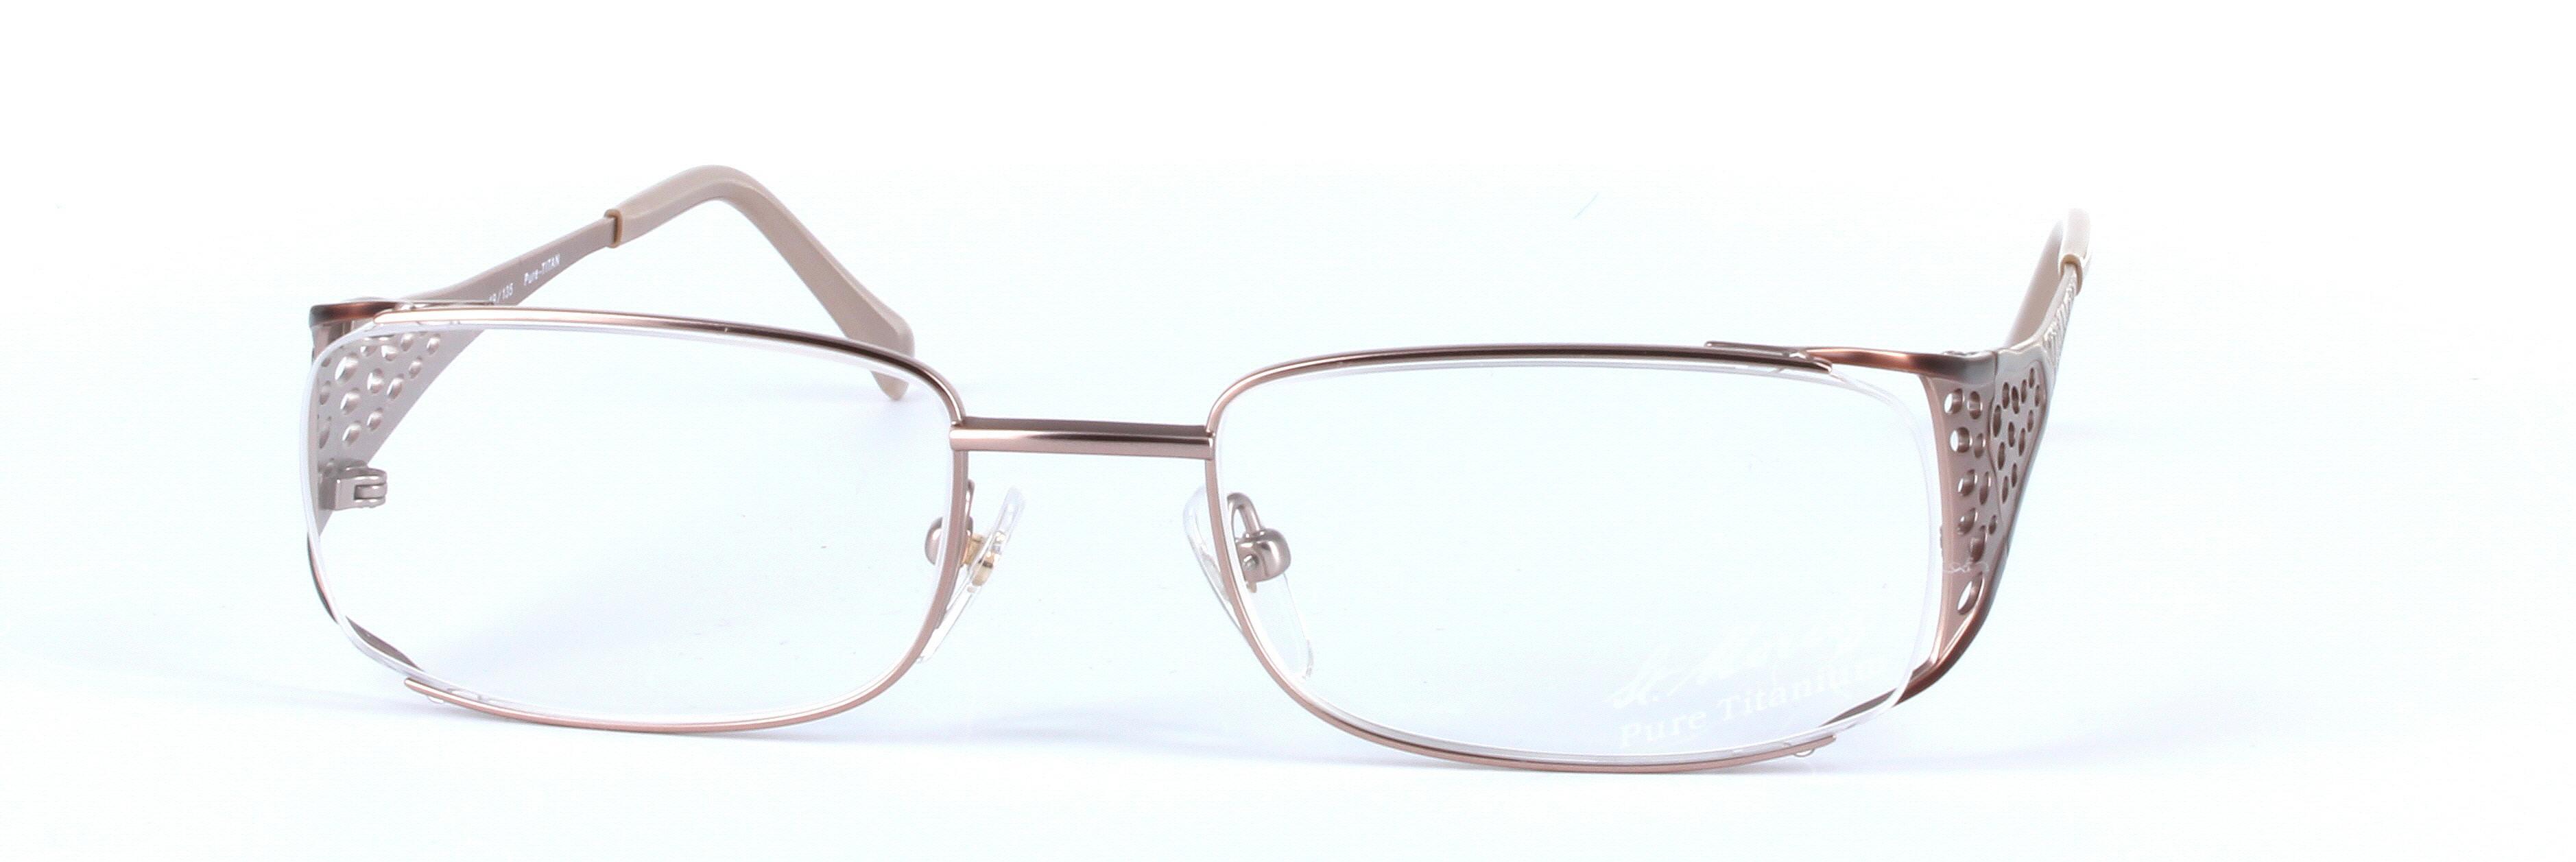 L'ART St-MORITZ (4782-002) Brown Full Rim Rectangular Metal Glasses - Image View 5